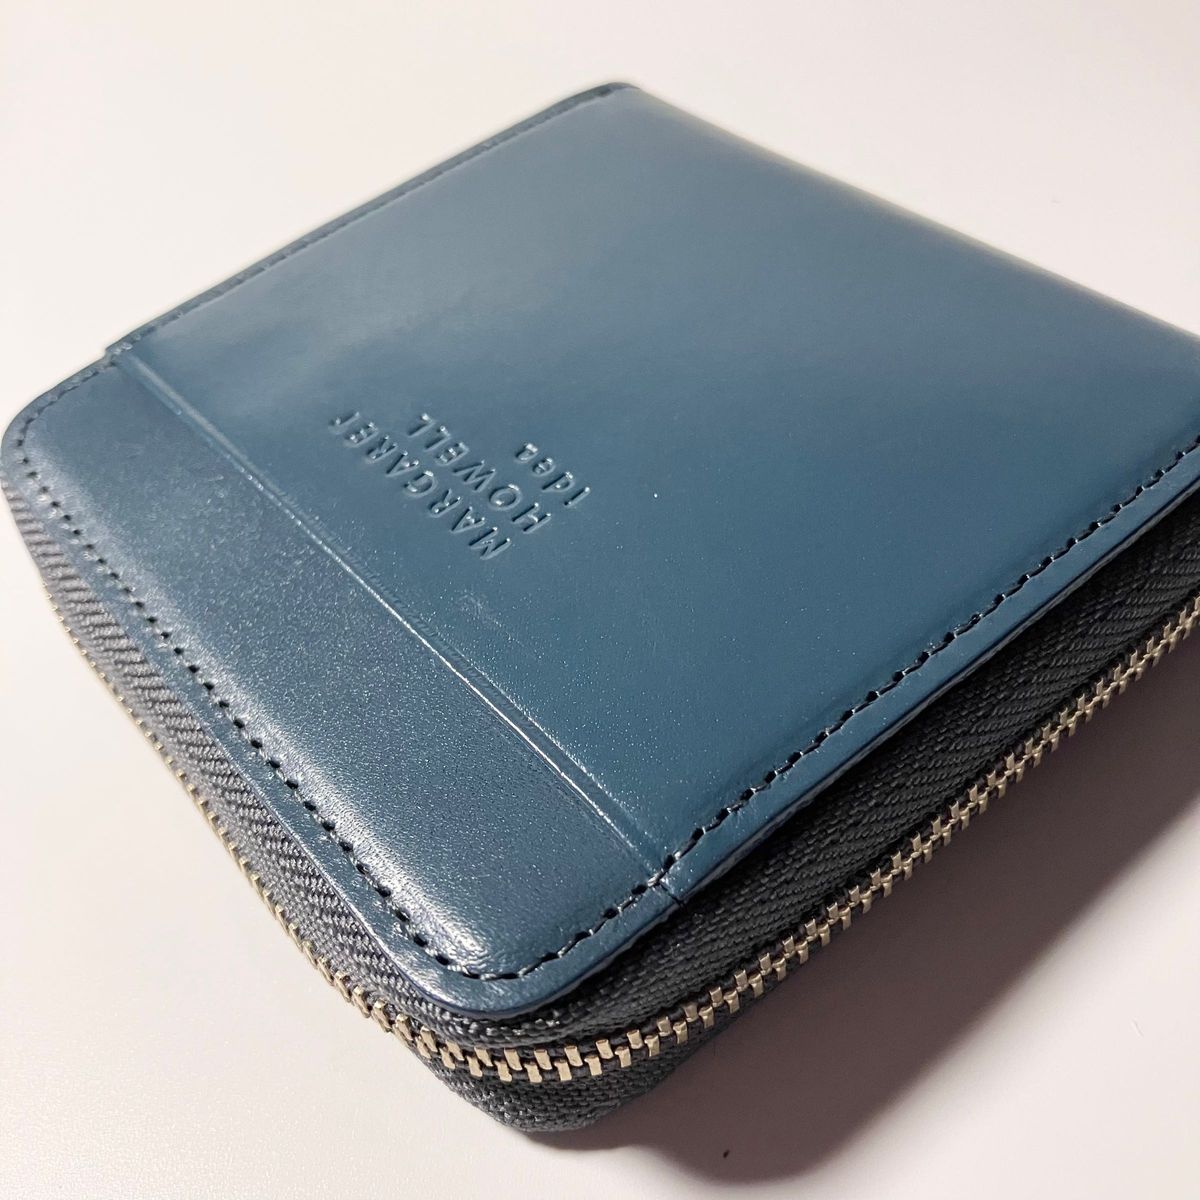 【人気】マーガレットハウエル 財布 二つ折り財布 ラウンドファスナー ブルー 青 レザー 財布